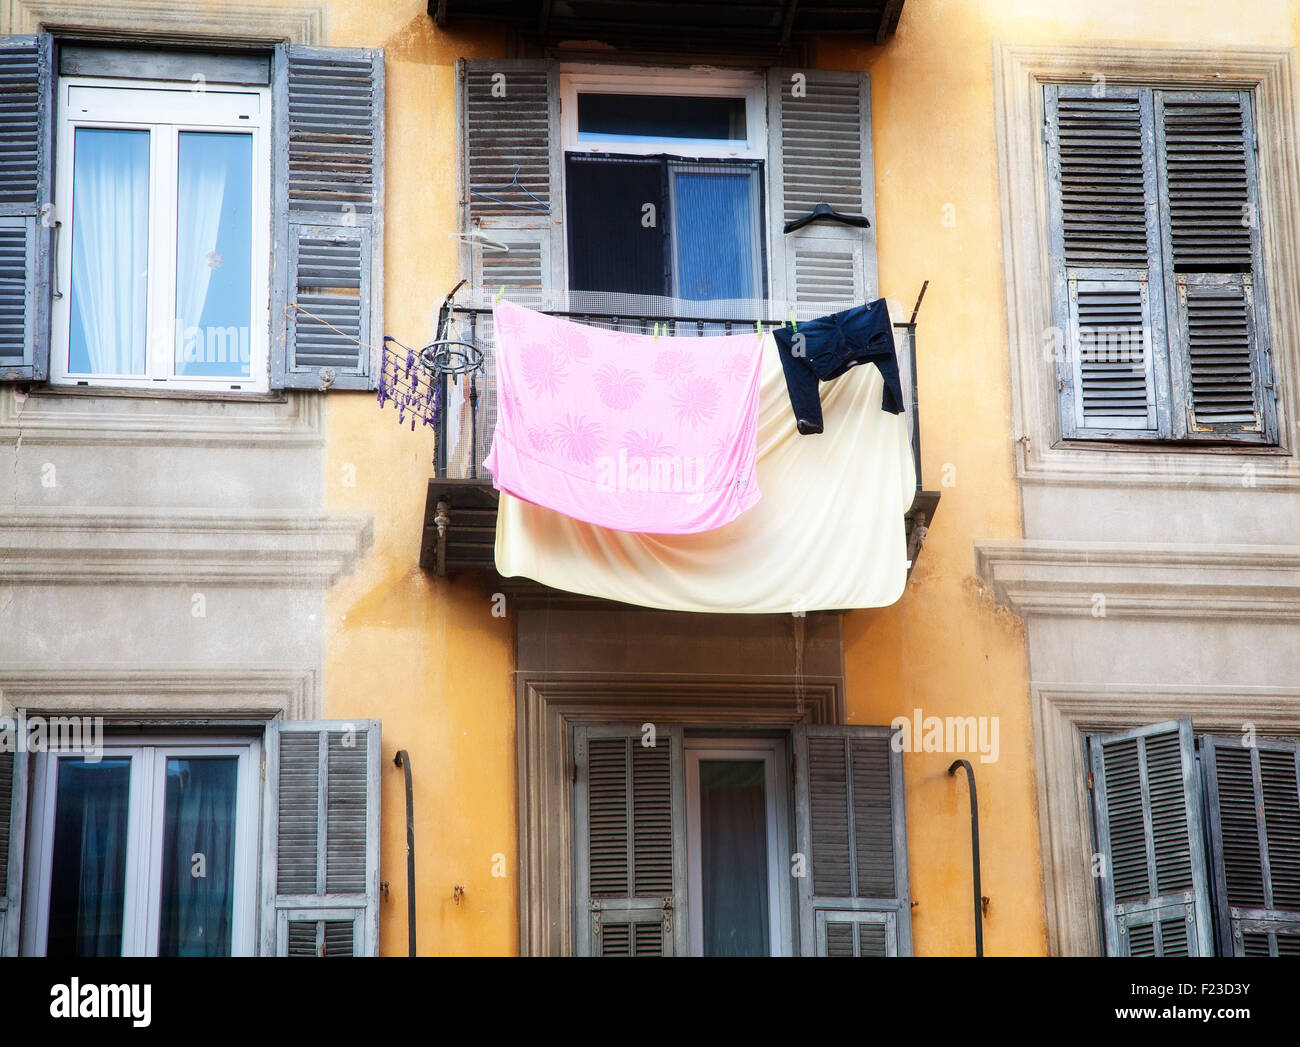 Wäsche trocknen auf den Balkon einer Wohnung in Nizza, Frankreich  Stockfotografie - Alamy